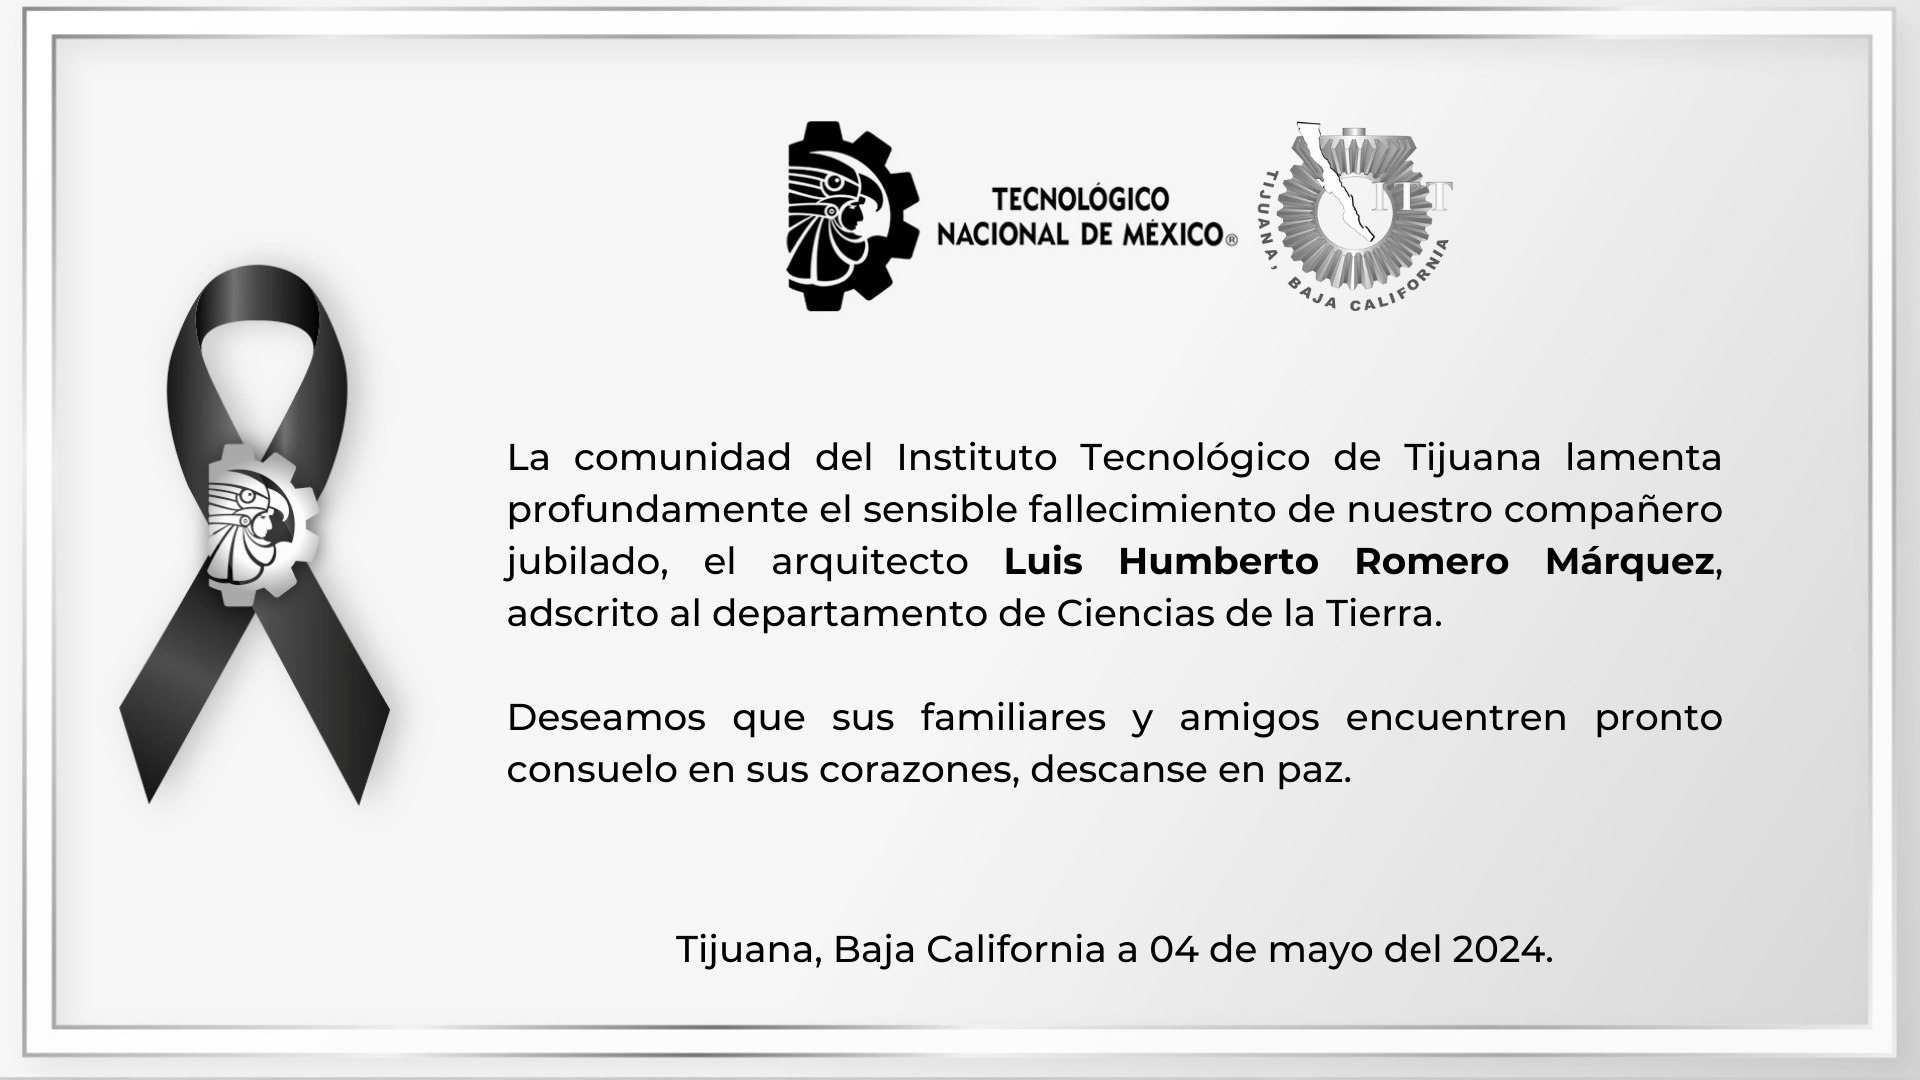 La comunidad del Instituto Tecnológico de Tijuana lamenta profundamente el sensible fallecimiento de nuestro compañero jubilado, el arquitecto Luis Humberto Romero Márquez